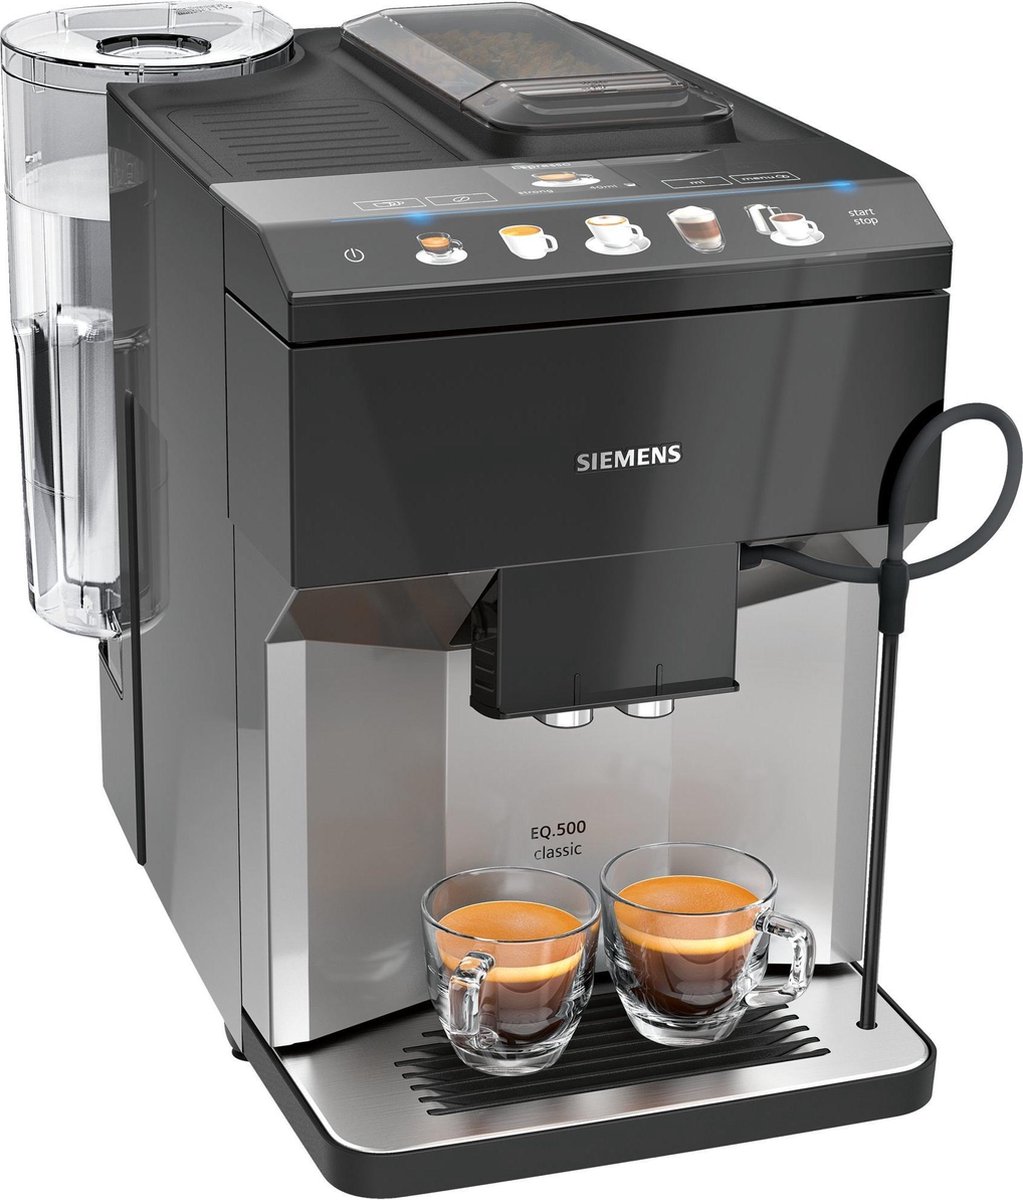 Siemens EQ.500 TP503R04 koffiezetapparaat Volledig automatisch Espressomachine 1 7 l